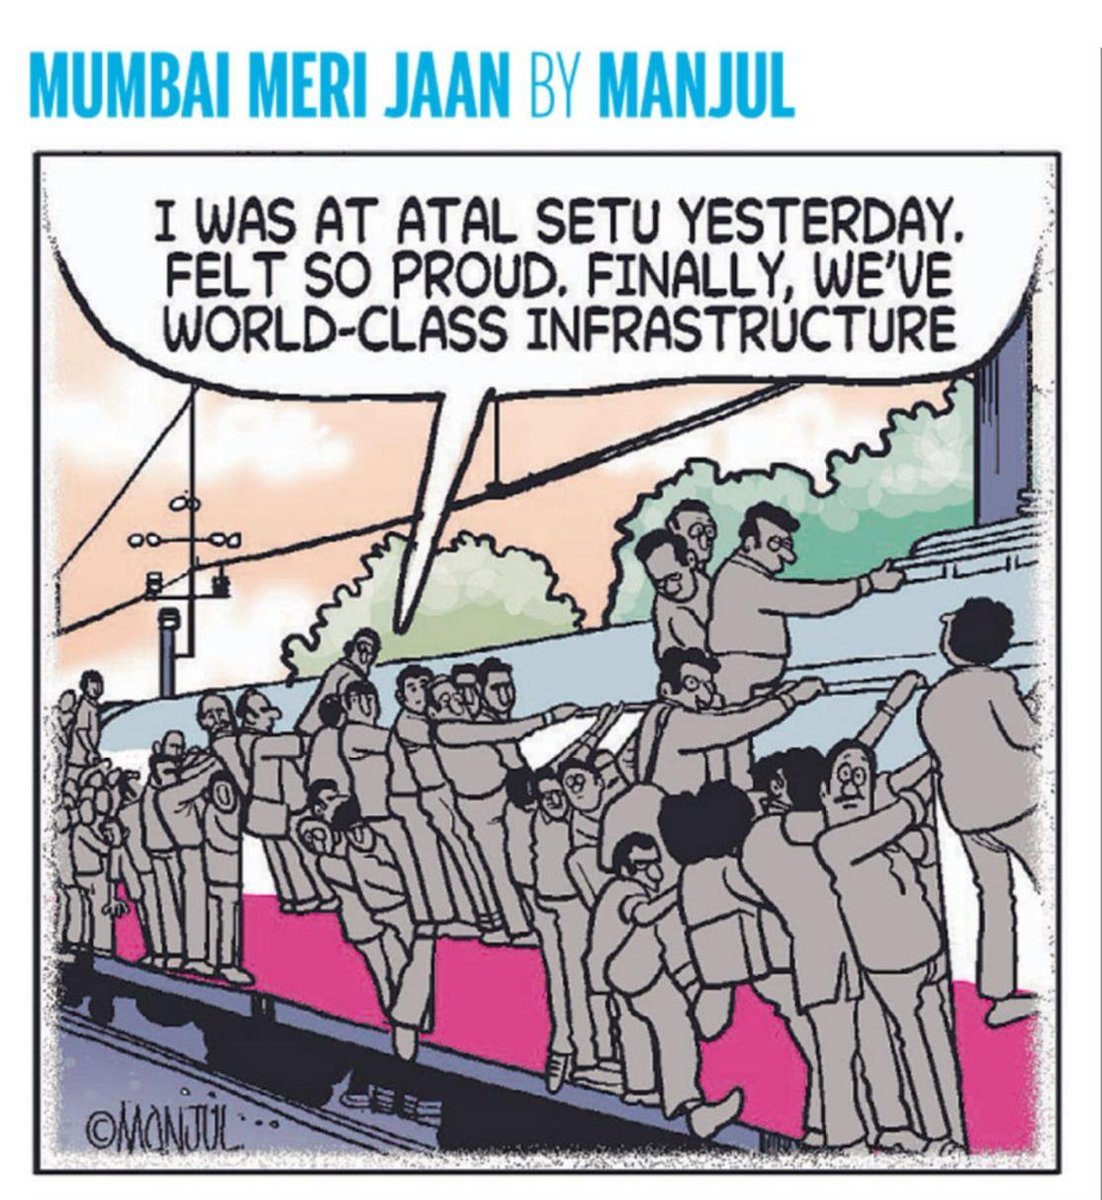 Where the spirit of Mumbai meets Modi's PR. @MANJULtoons